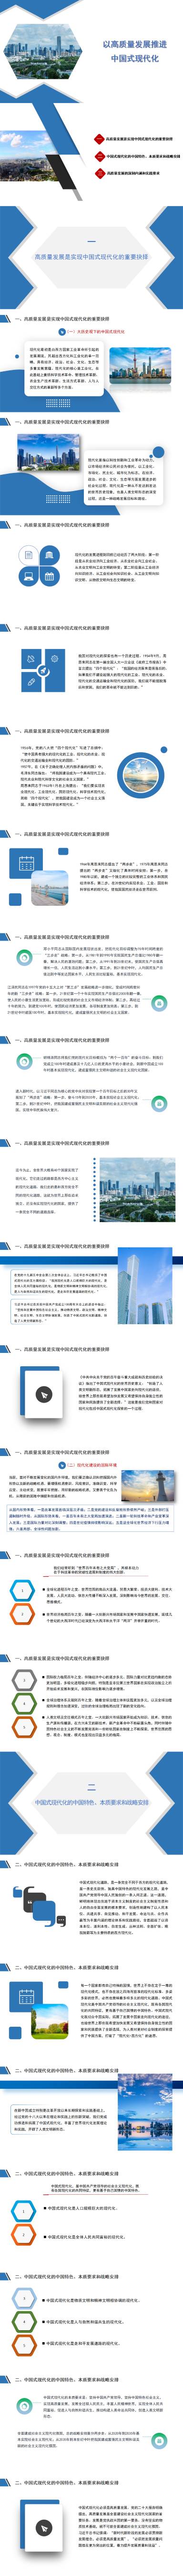 PPT：以高质量发展推进中国式现代化_01(1).jpg